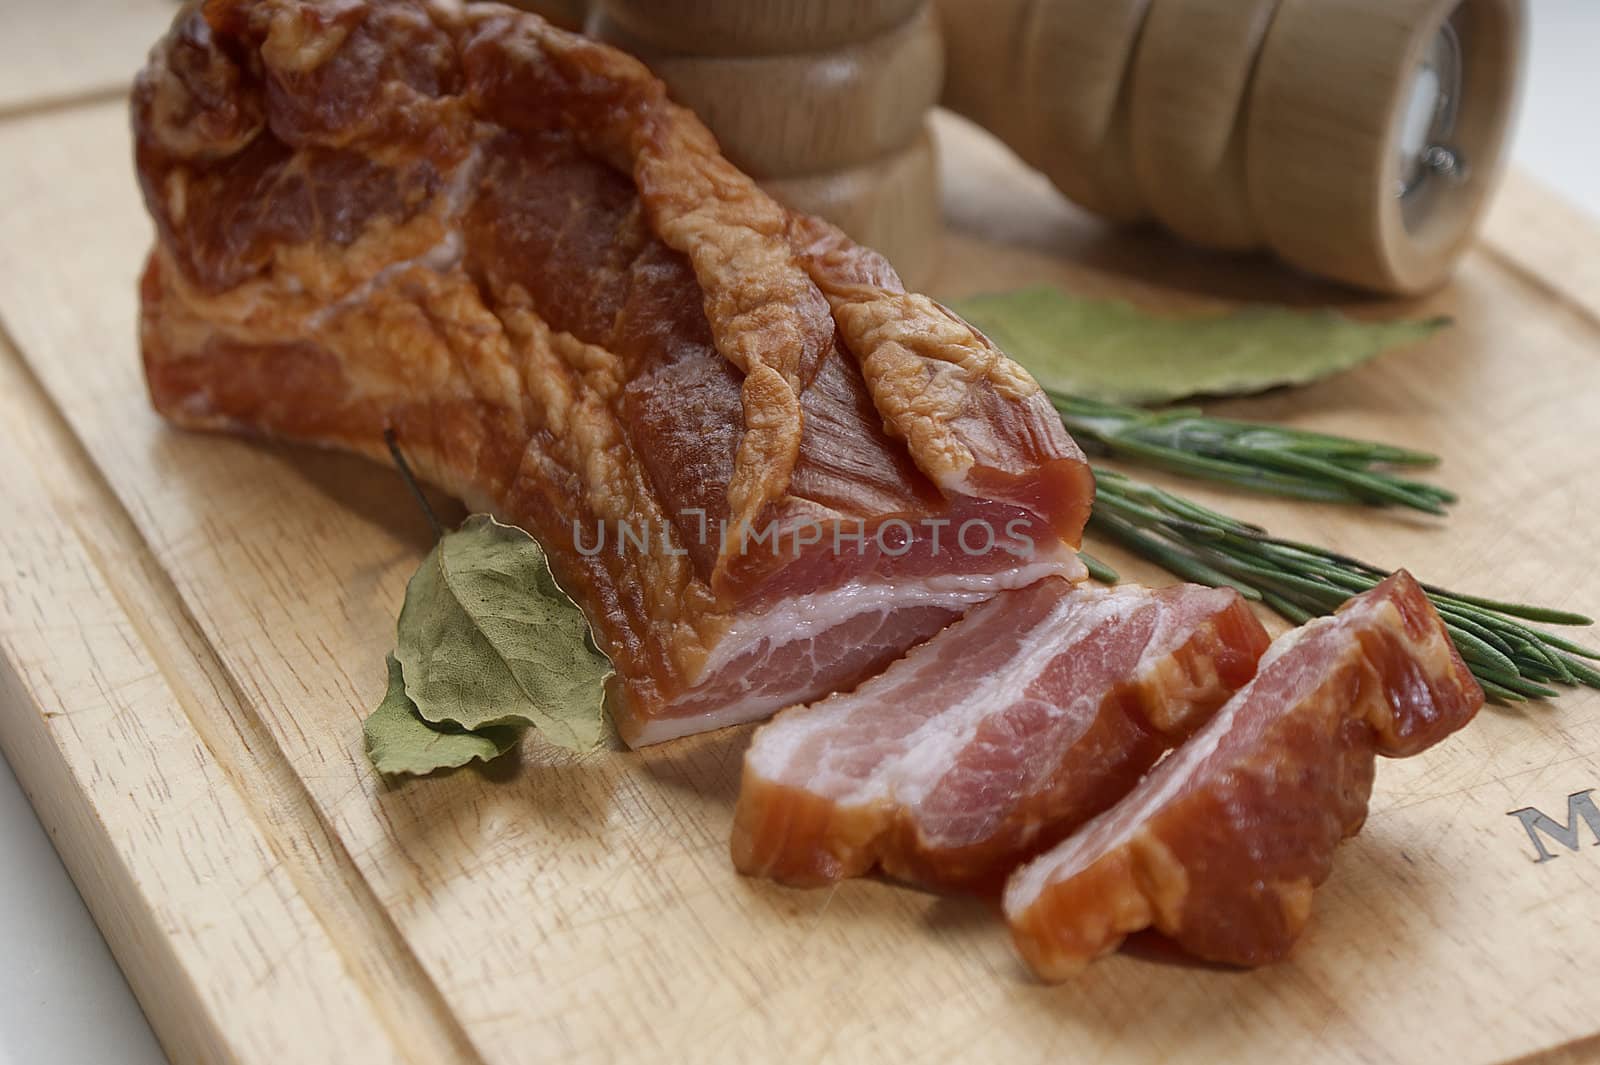 Smoked bacon by Angorius